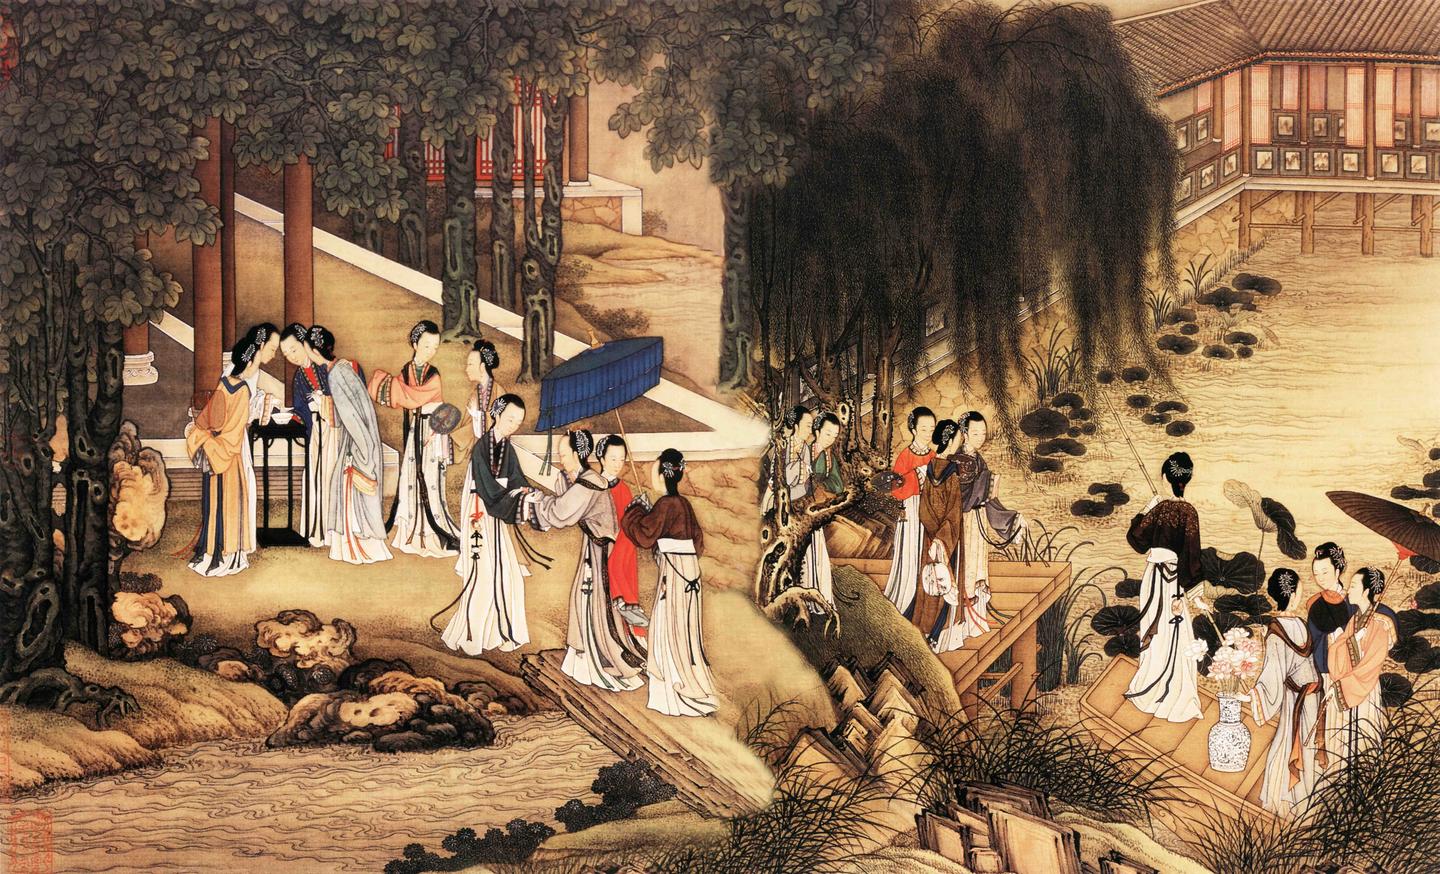 【衣食住行】上巳节,中国人与众不同的浪漫